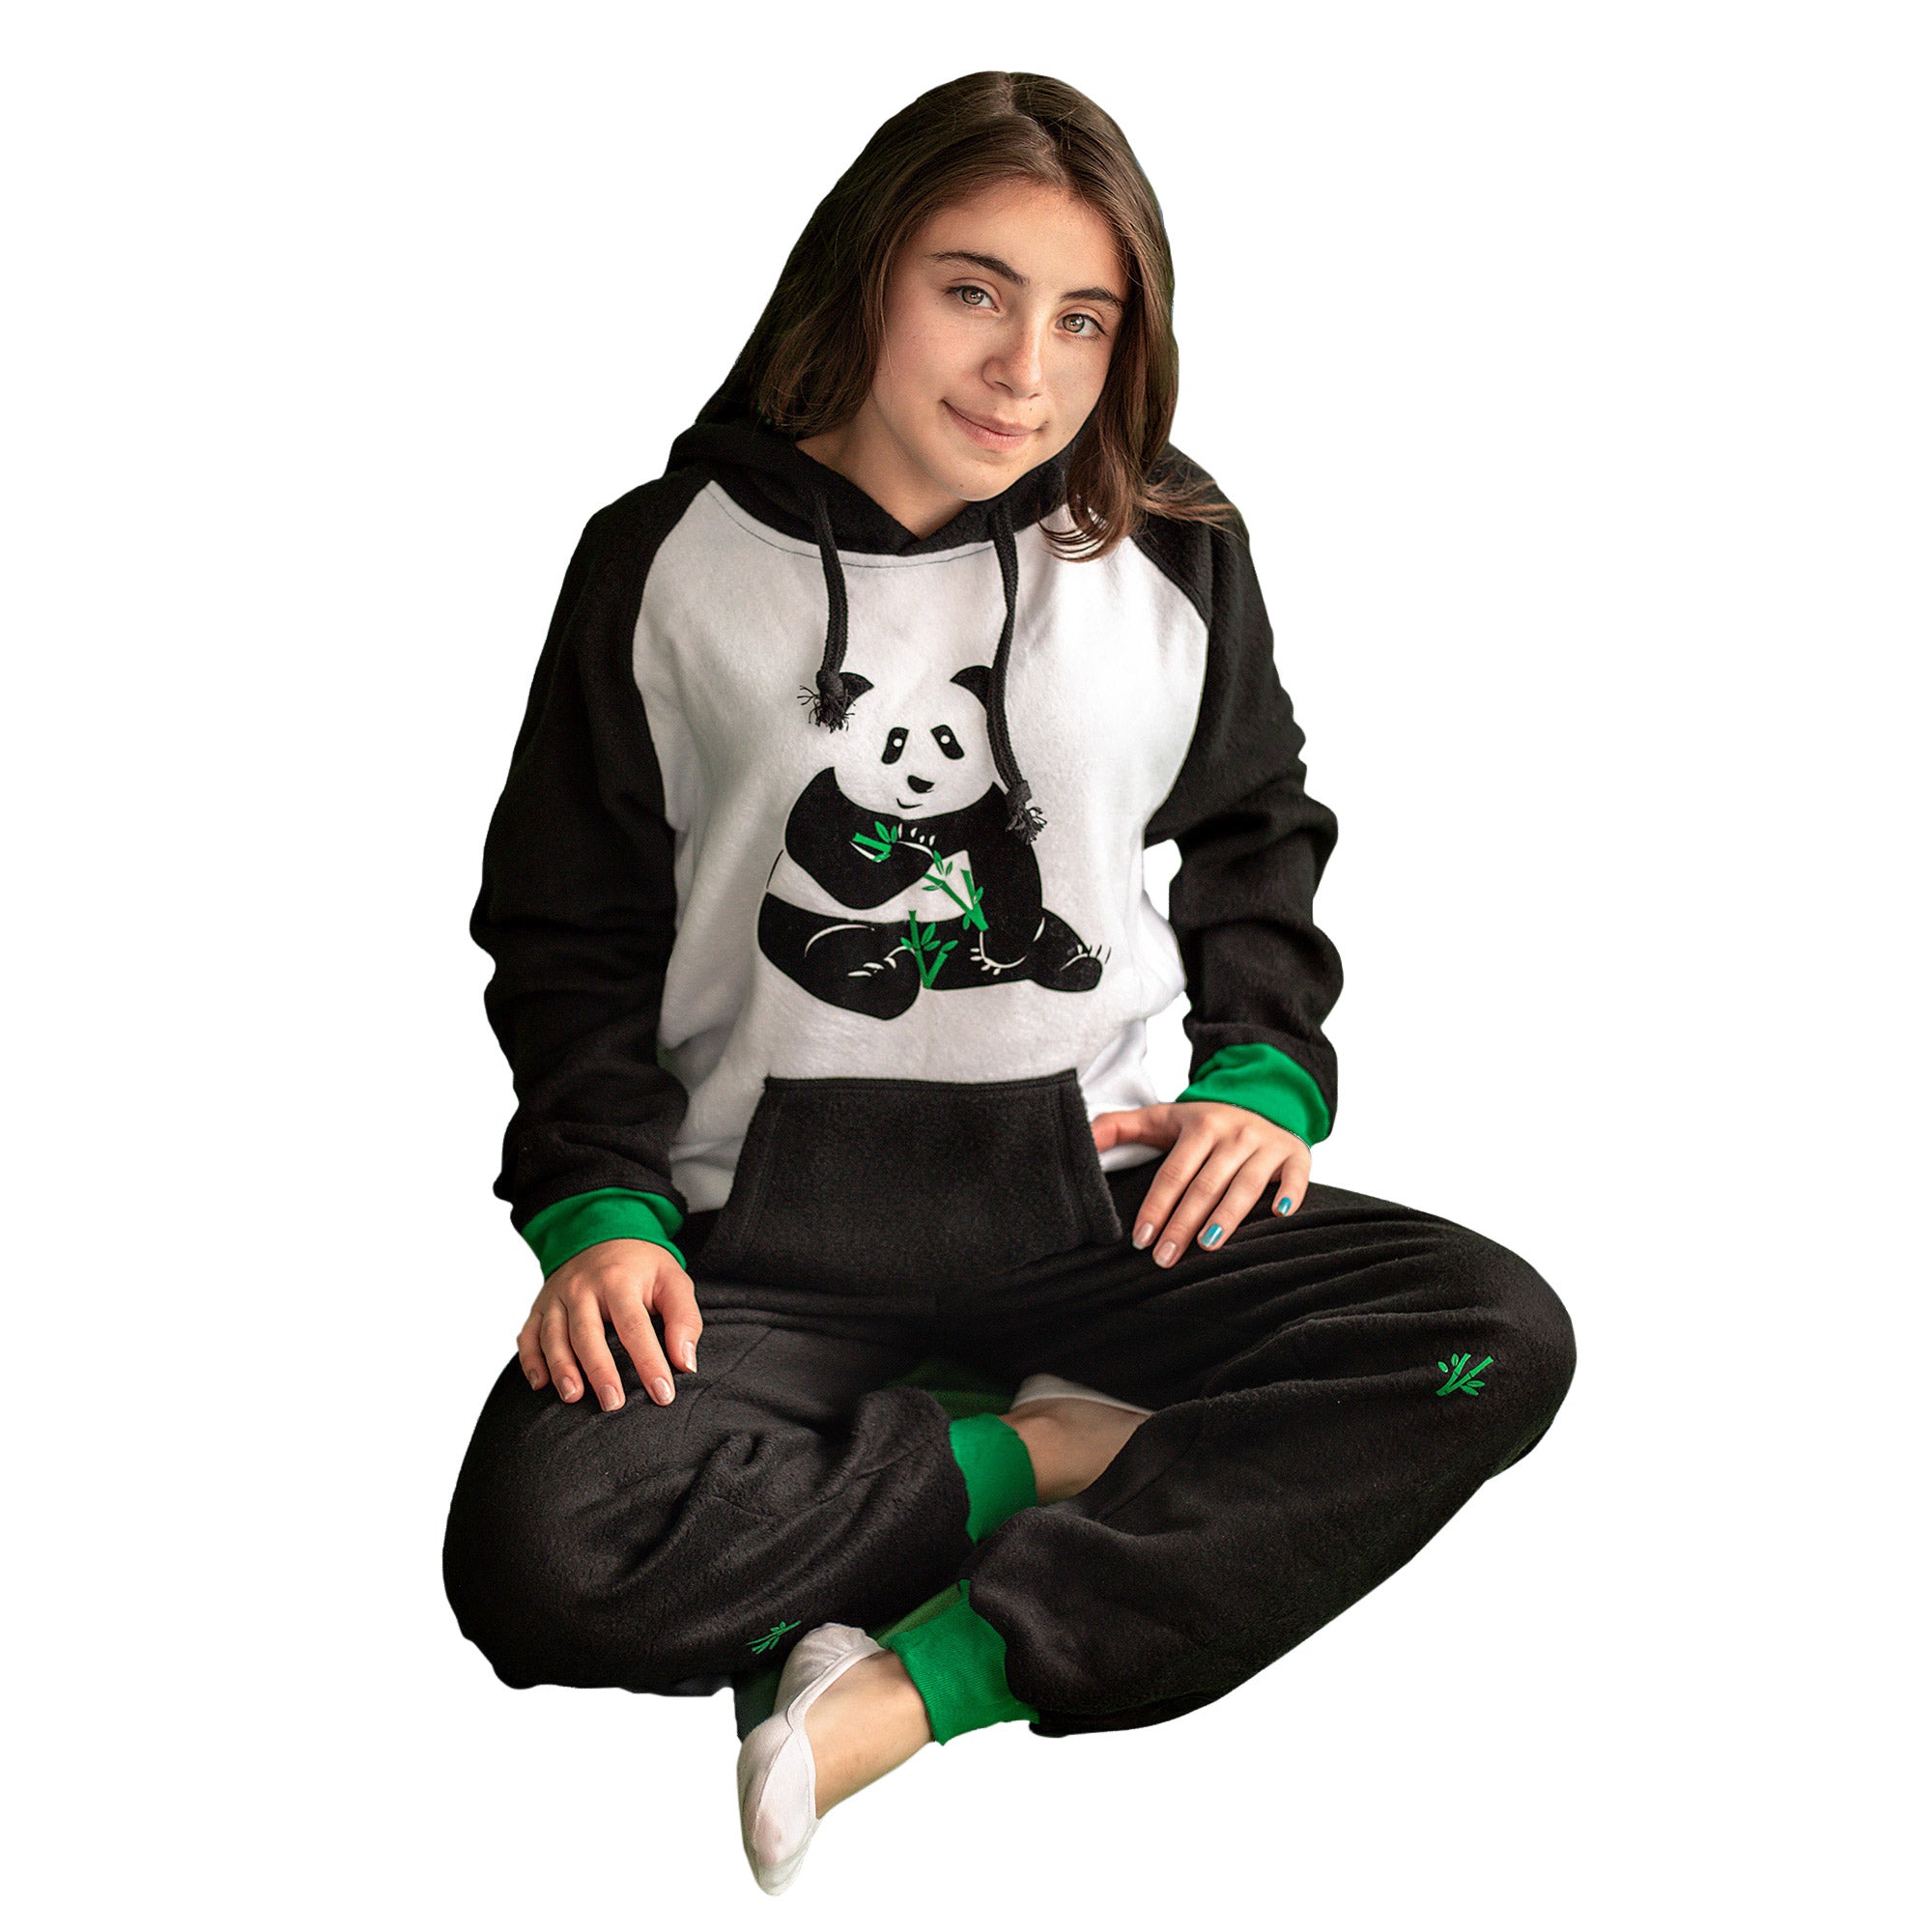 Niña sentada vistiendo la Pijama Oso Panda negra y blanca, con un lindo oso panda en el pecho comiendo bambú, diseño de Arctic Fox Colombia.